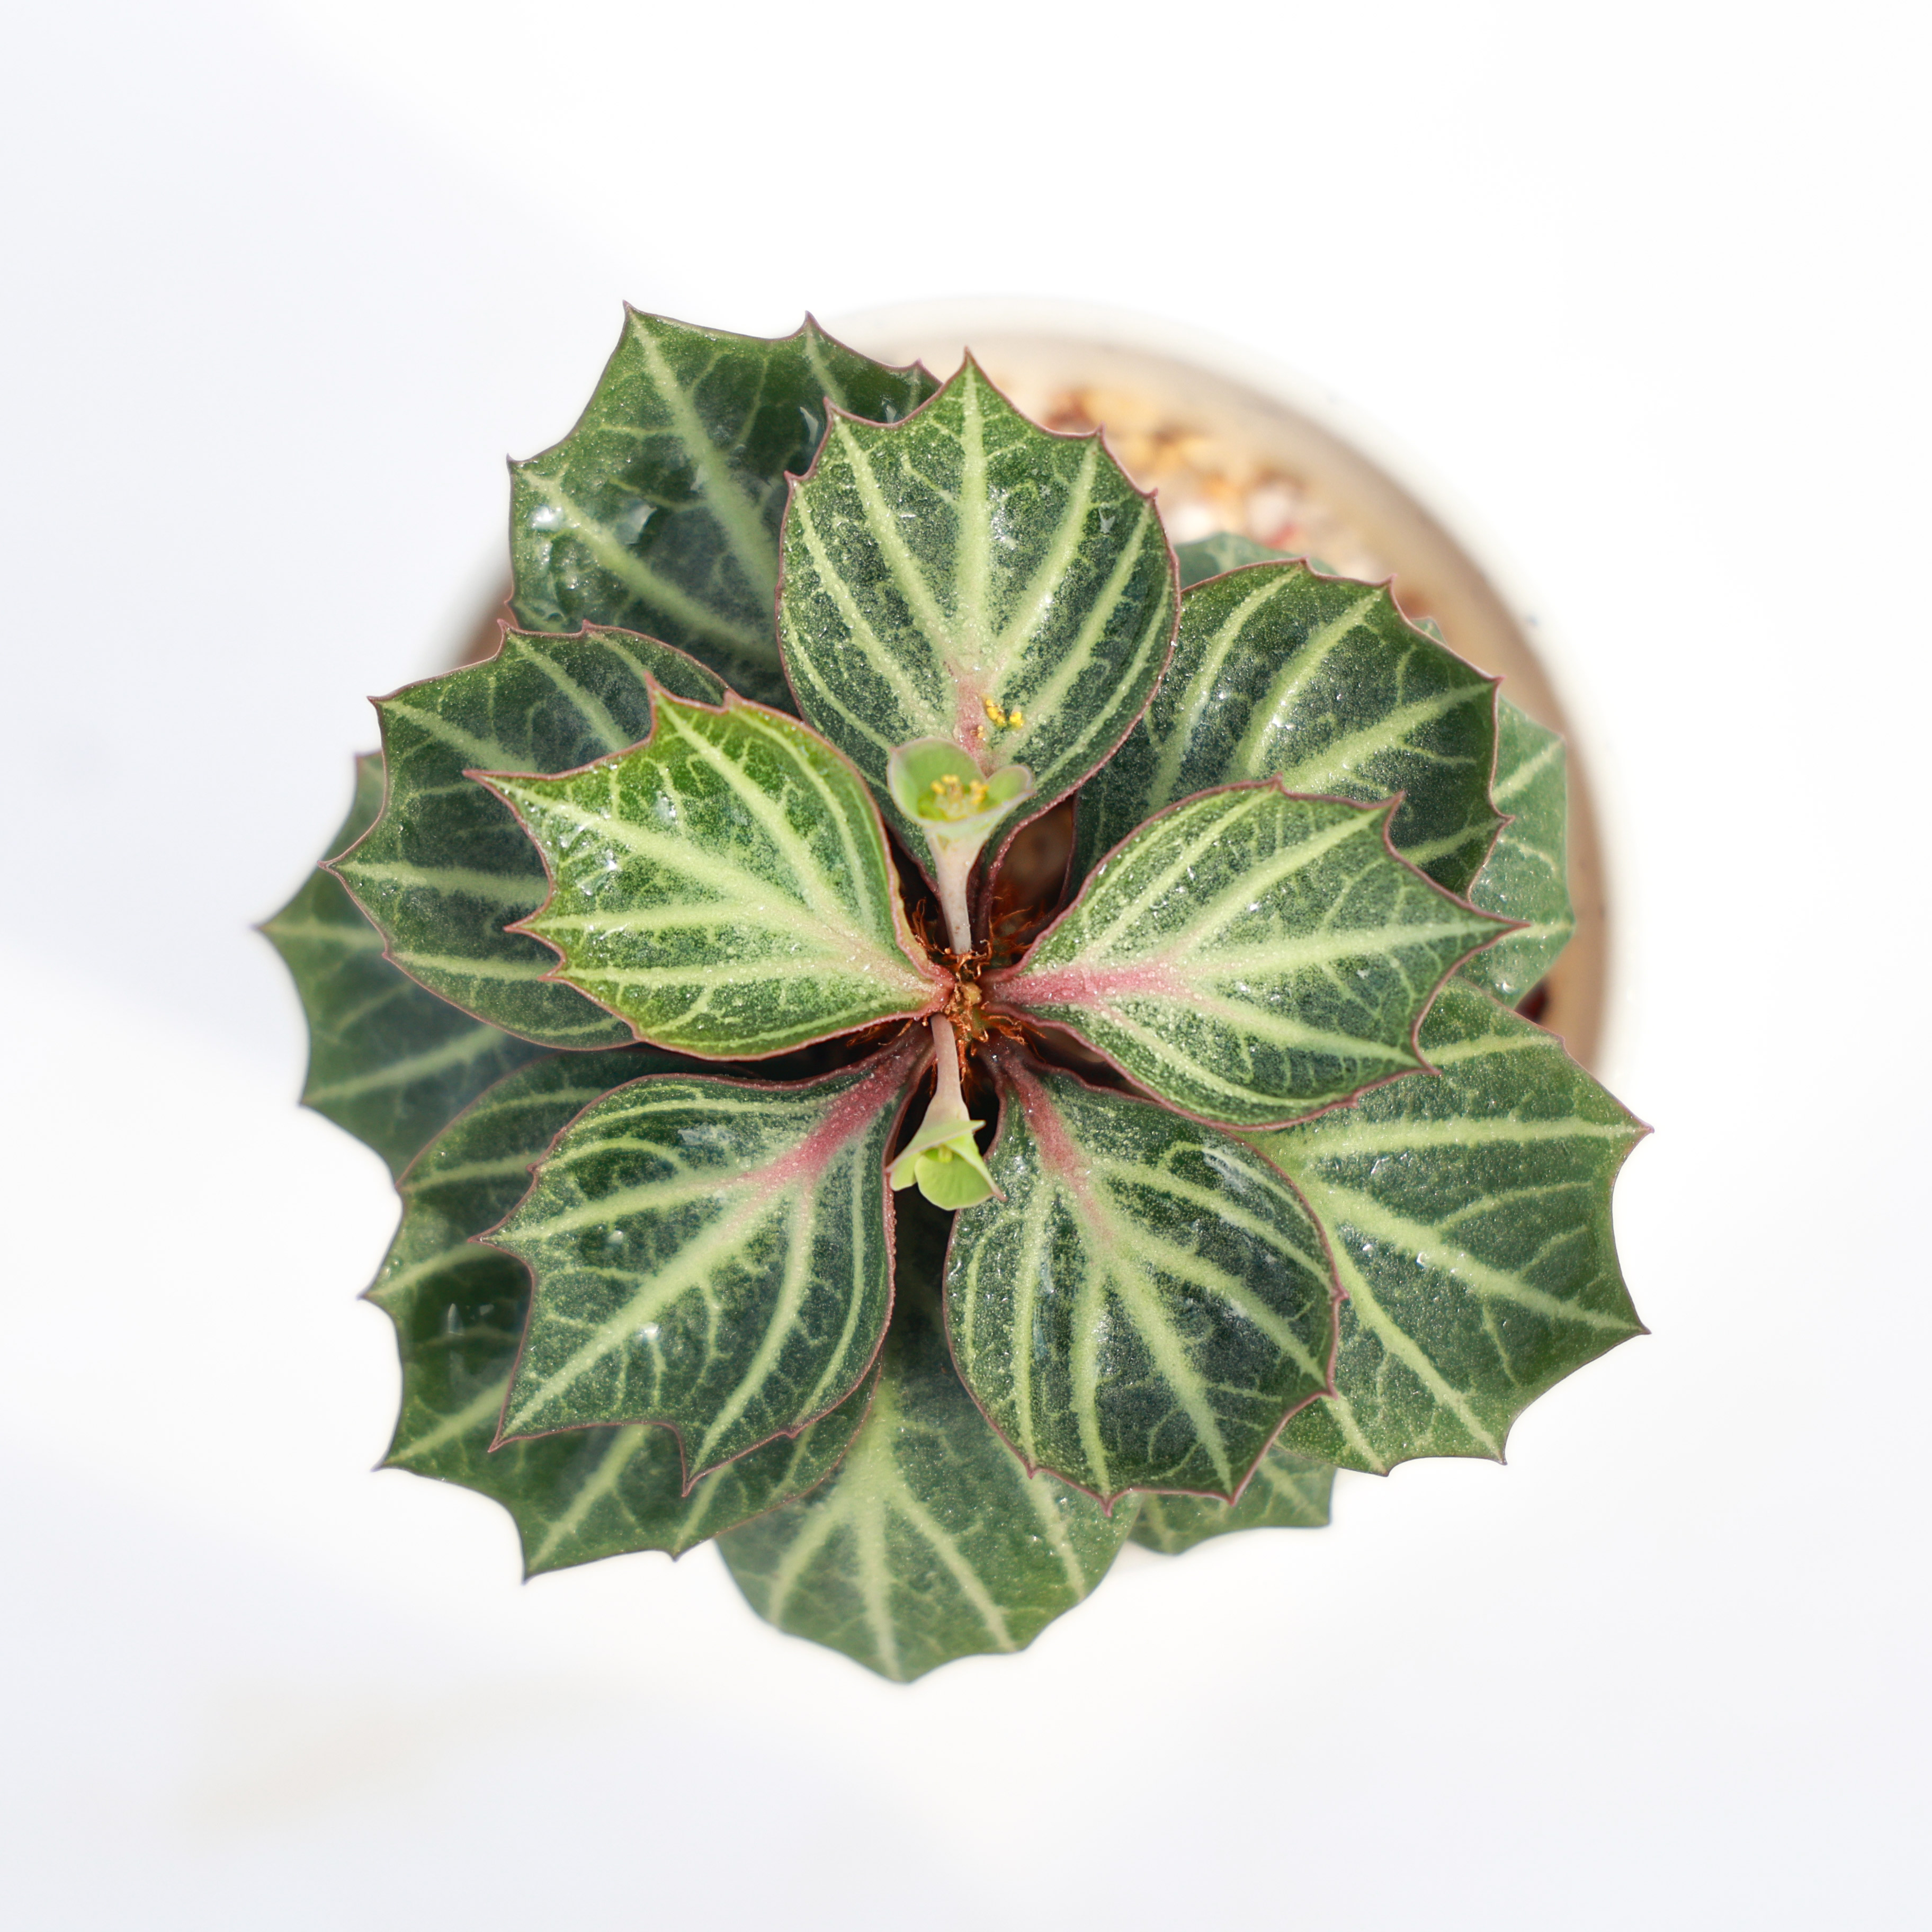 【精品来袭】彩叶麒麟 Euphorbia francoisii 绿植多肉每周五更新 - 图3